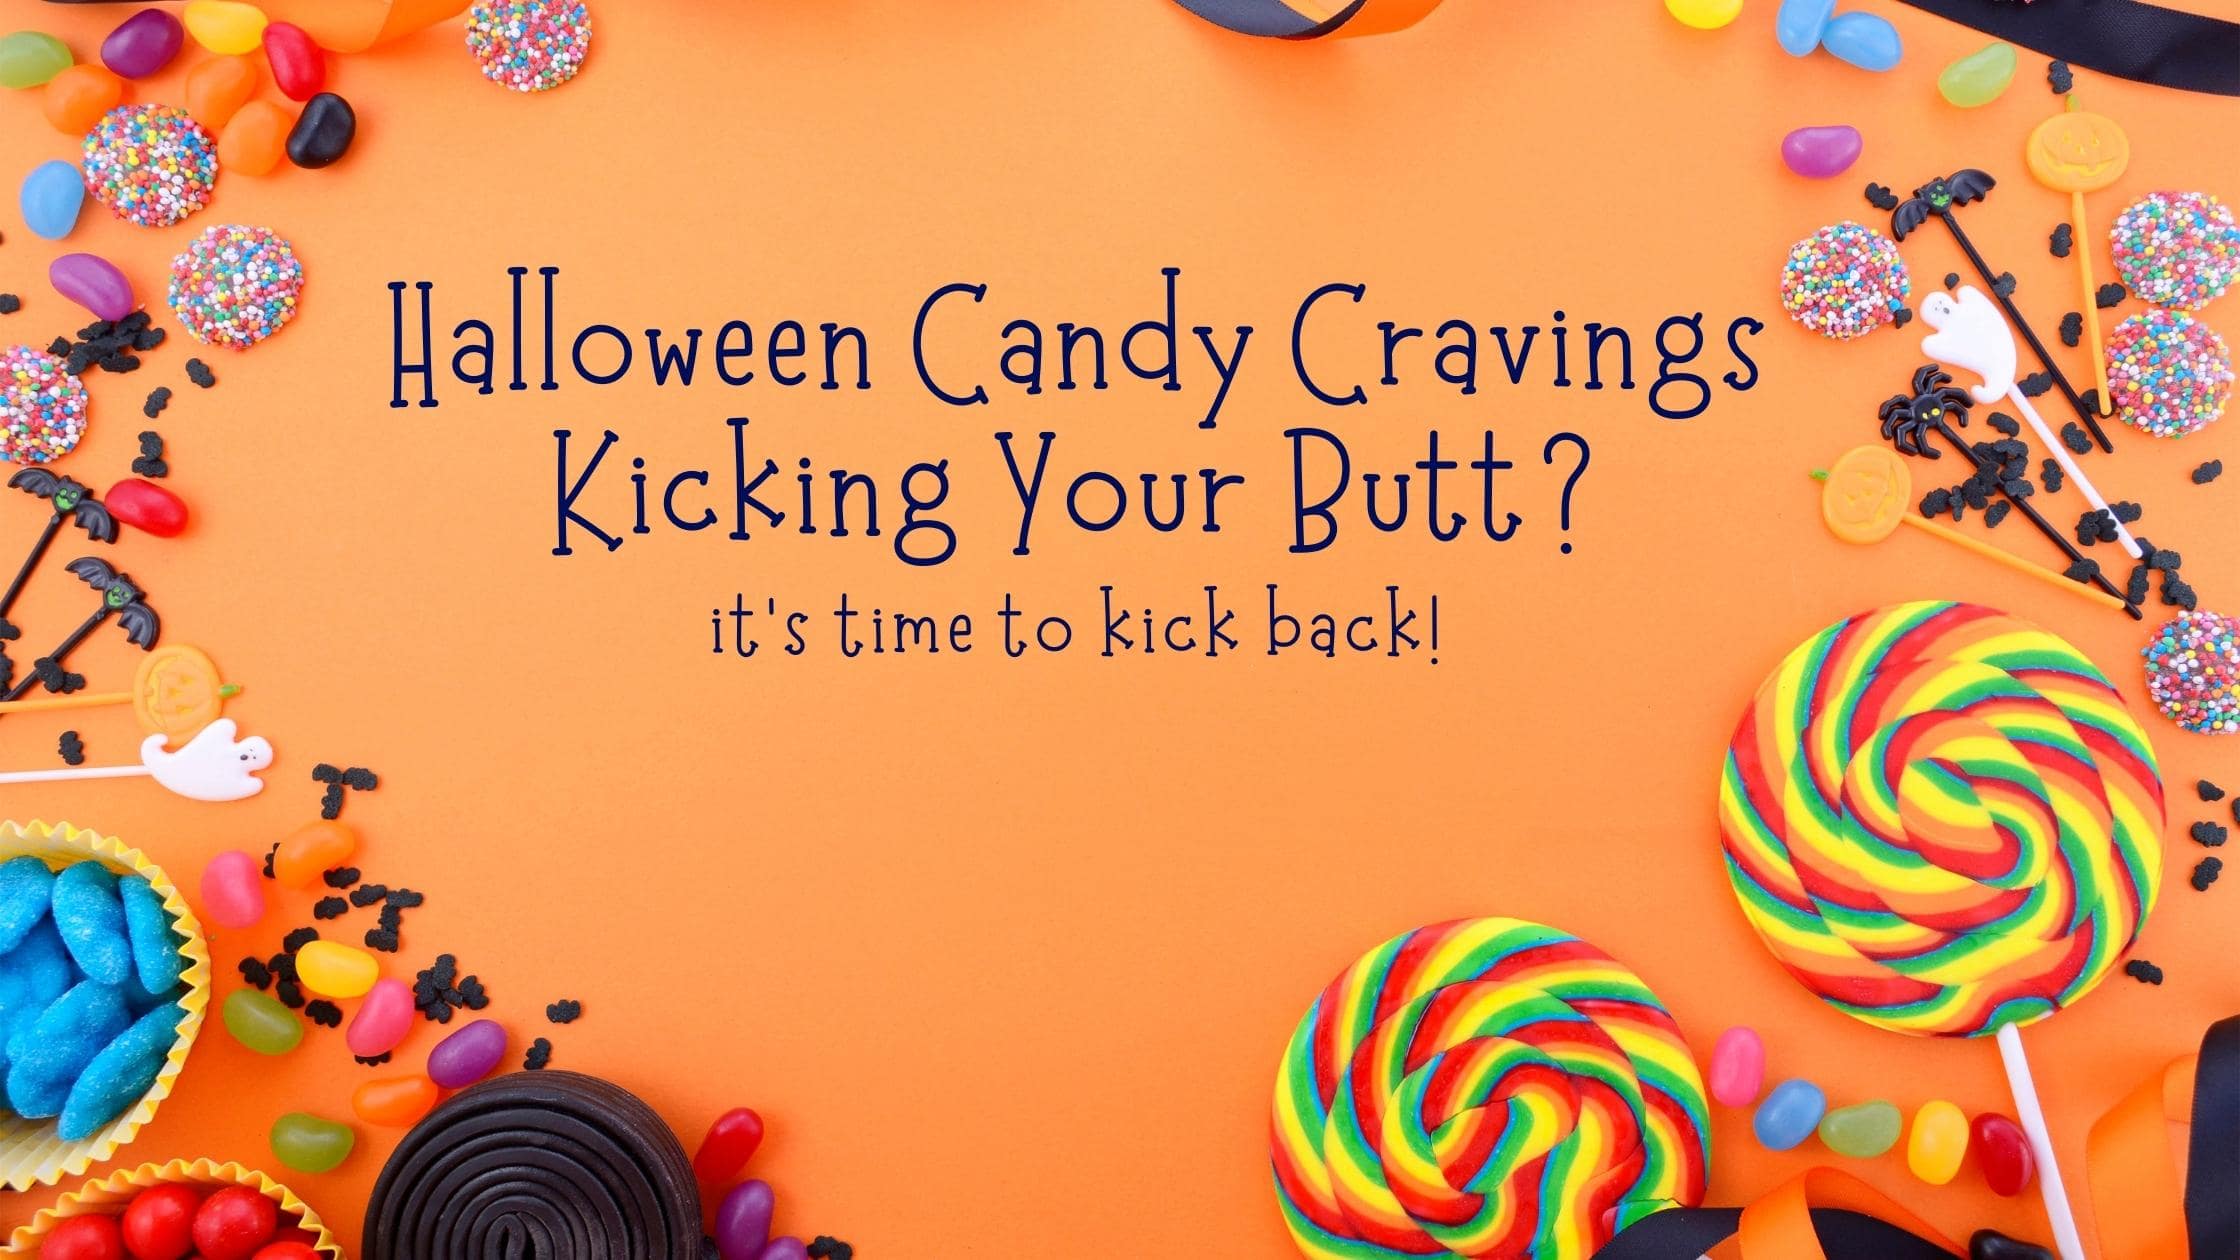 Halloween Candy Cravings, Halloween Candy, Candy Cravings, kick Candy Cravings, kick cravings,